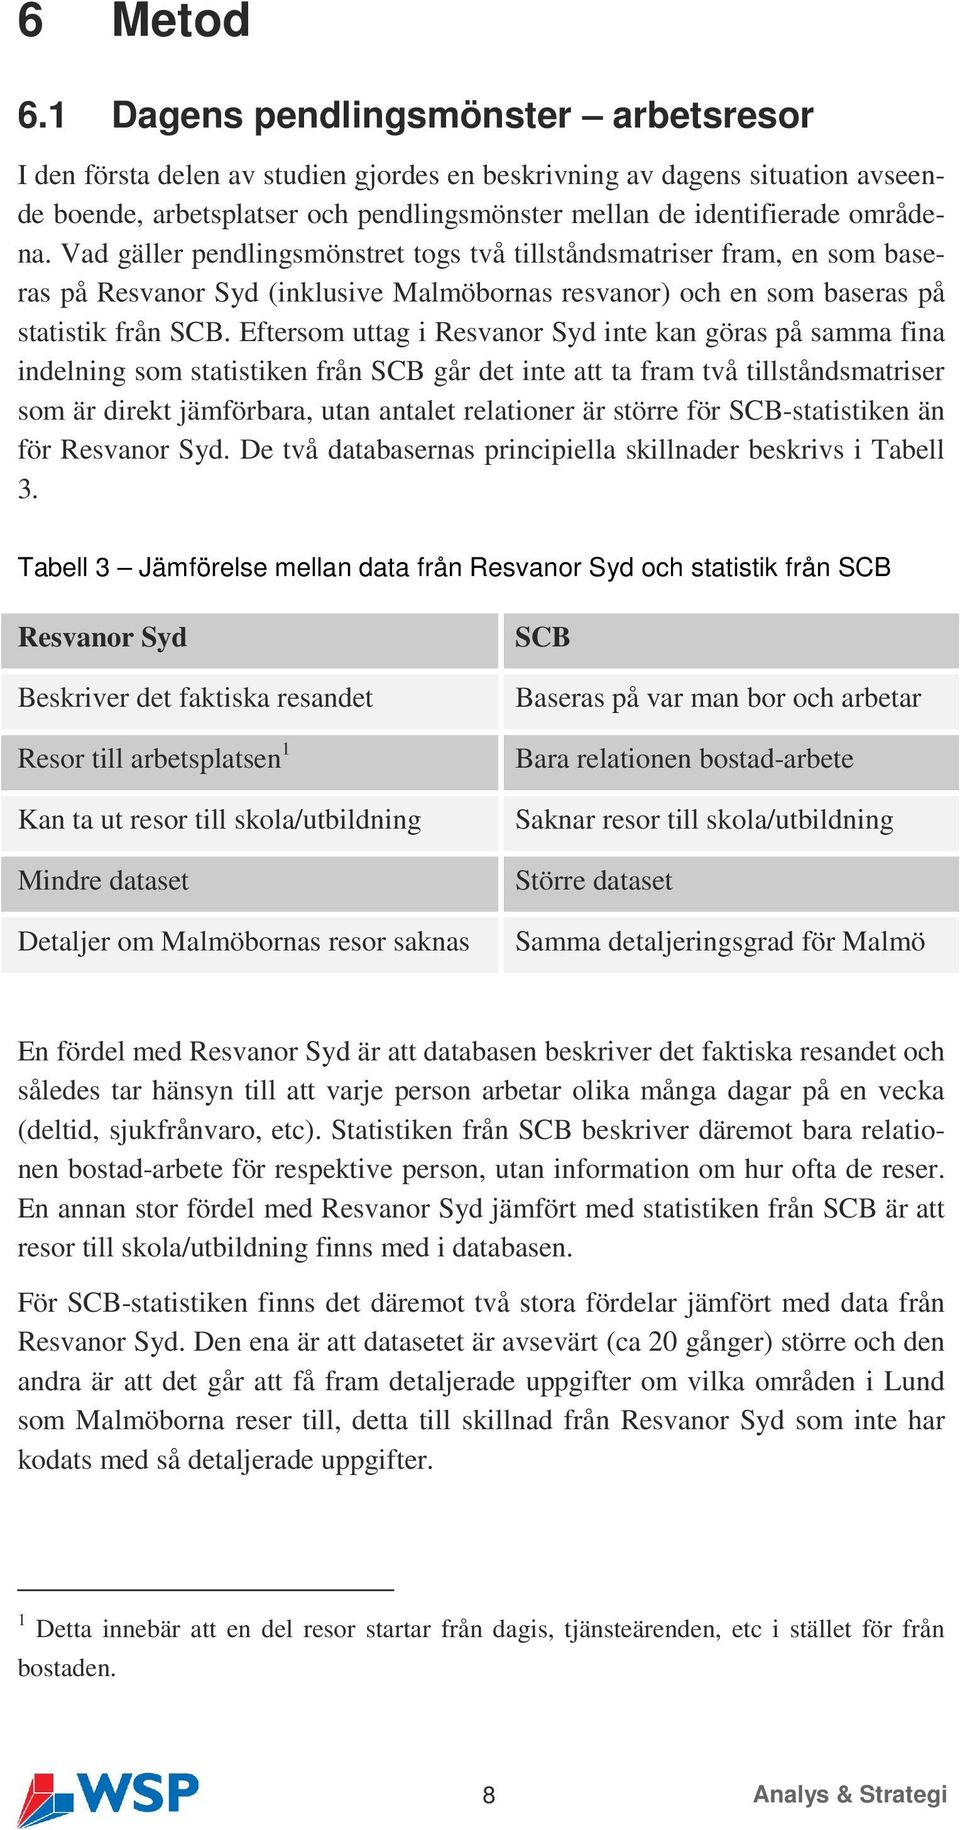 Vad gäller pendlingsmönstret togs två tillståndsmatriser fram, en som baseras på Resvanor Syd (inklusive Malmöbornas resvanor) och en som baseras på statistik från SCB.